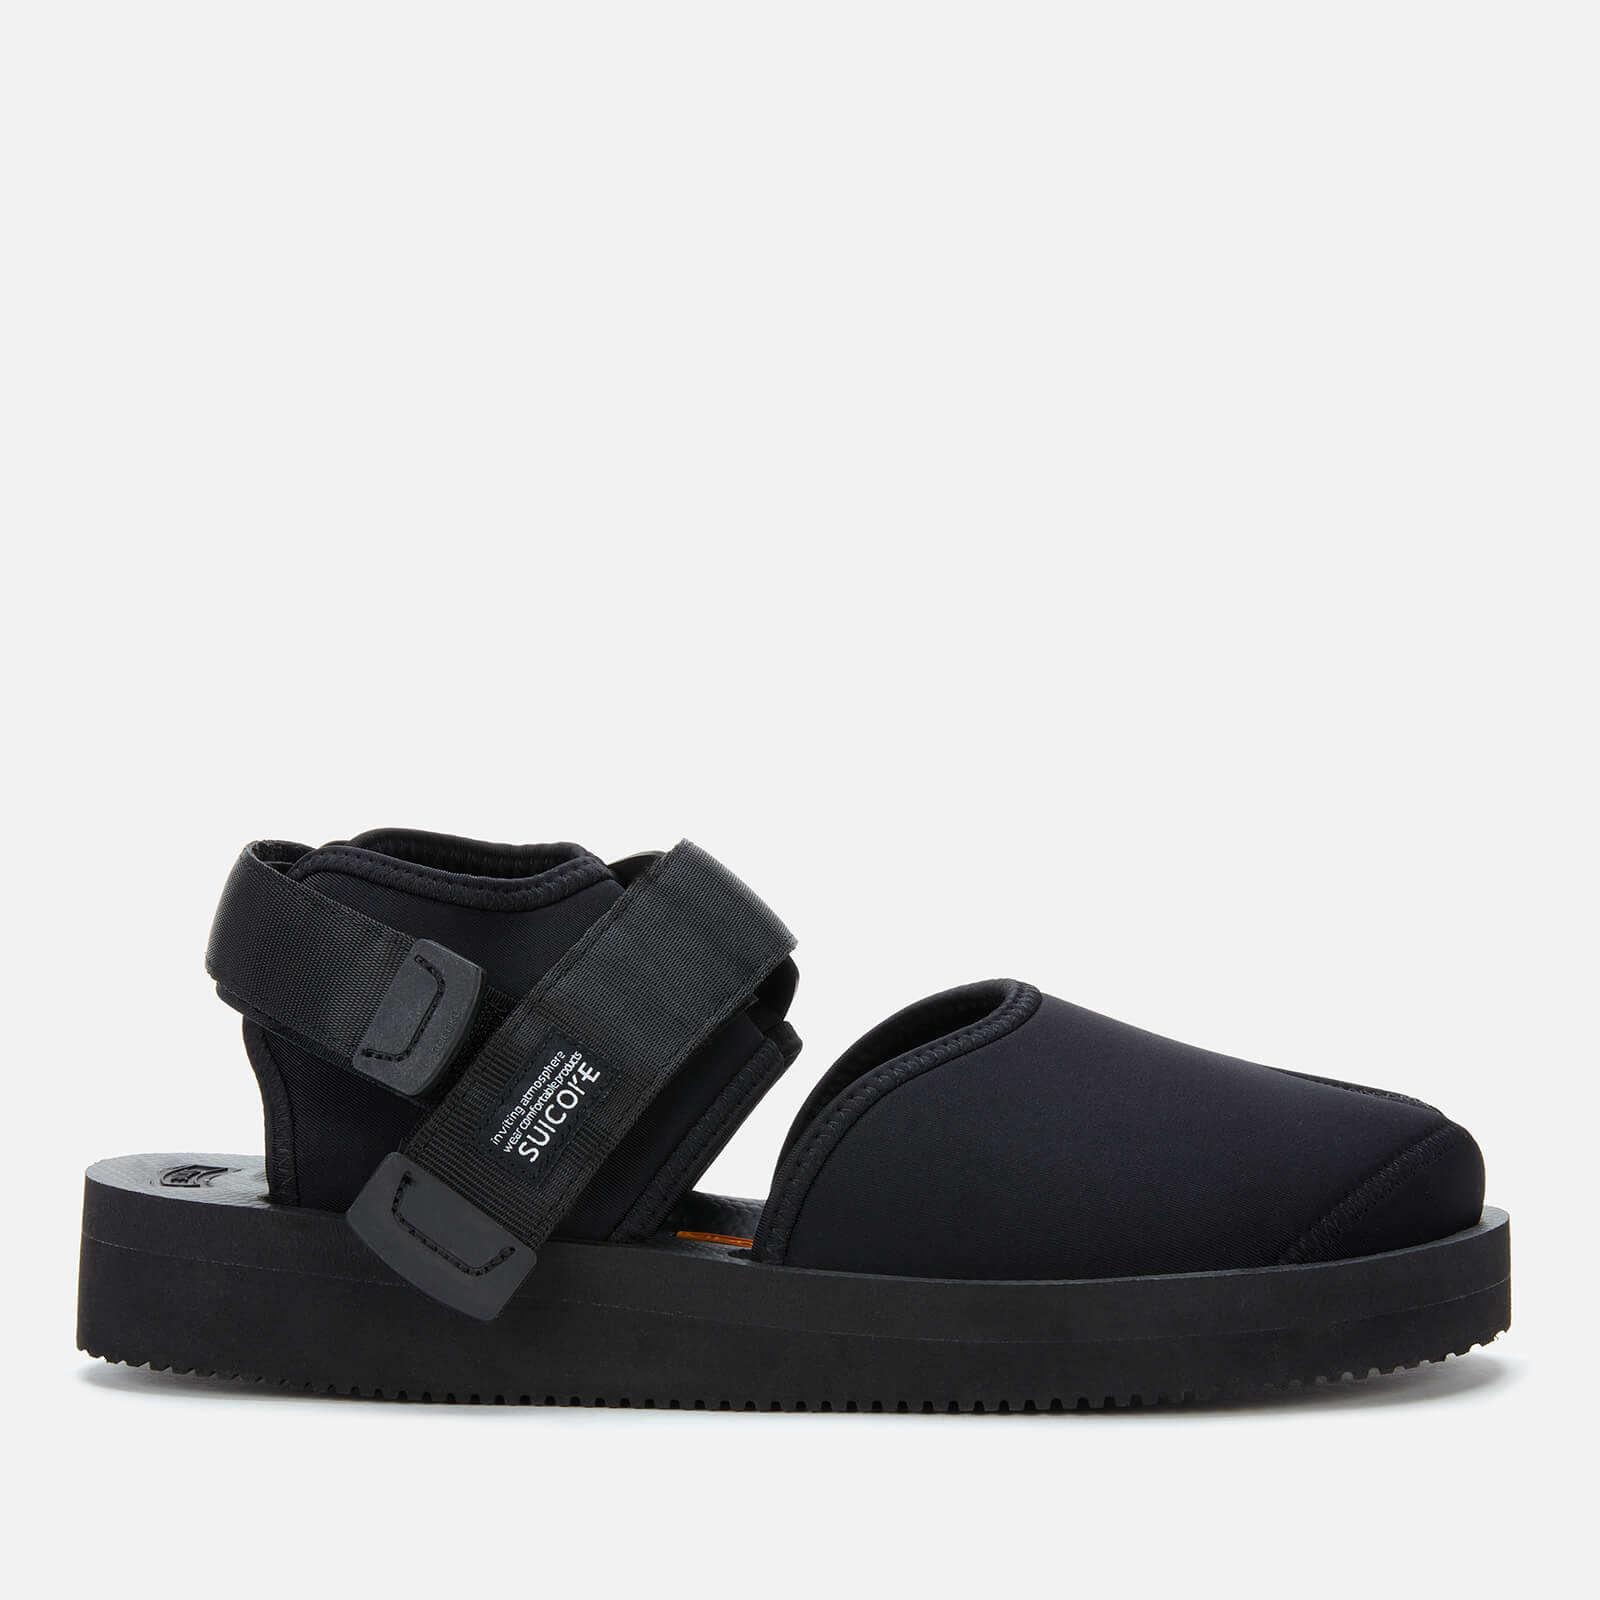 suicoke bita-v closed toe sandals - black - 3